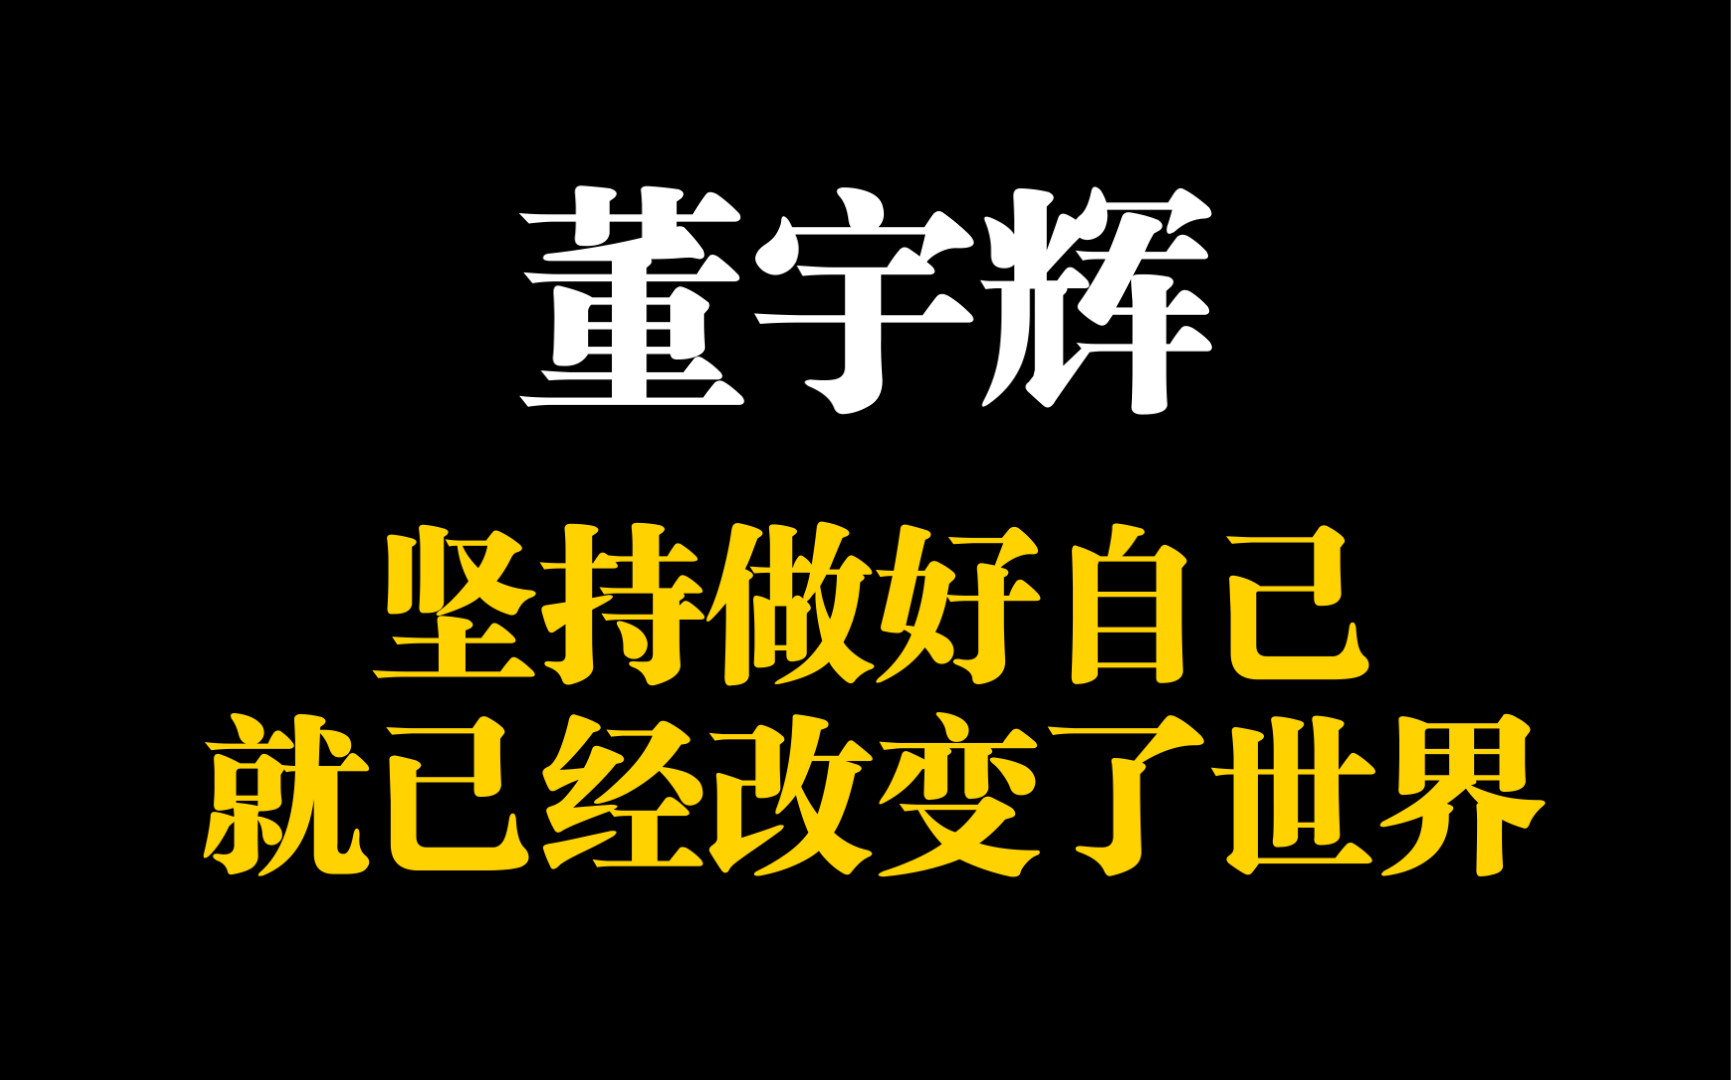 董宇辉的山西绝美宣传文，才是文案天花板-鸟哥笔记